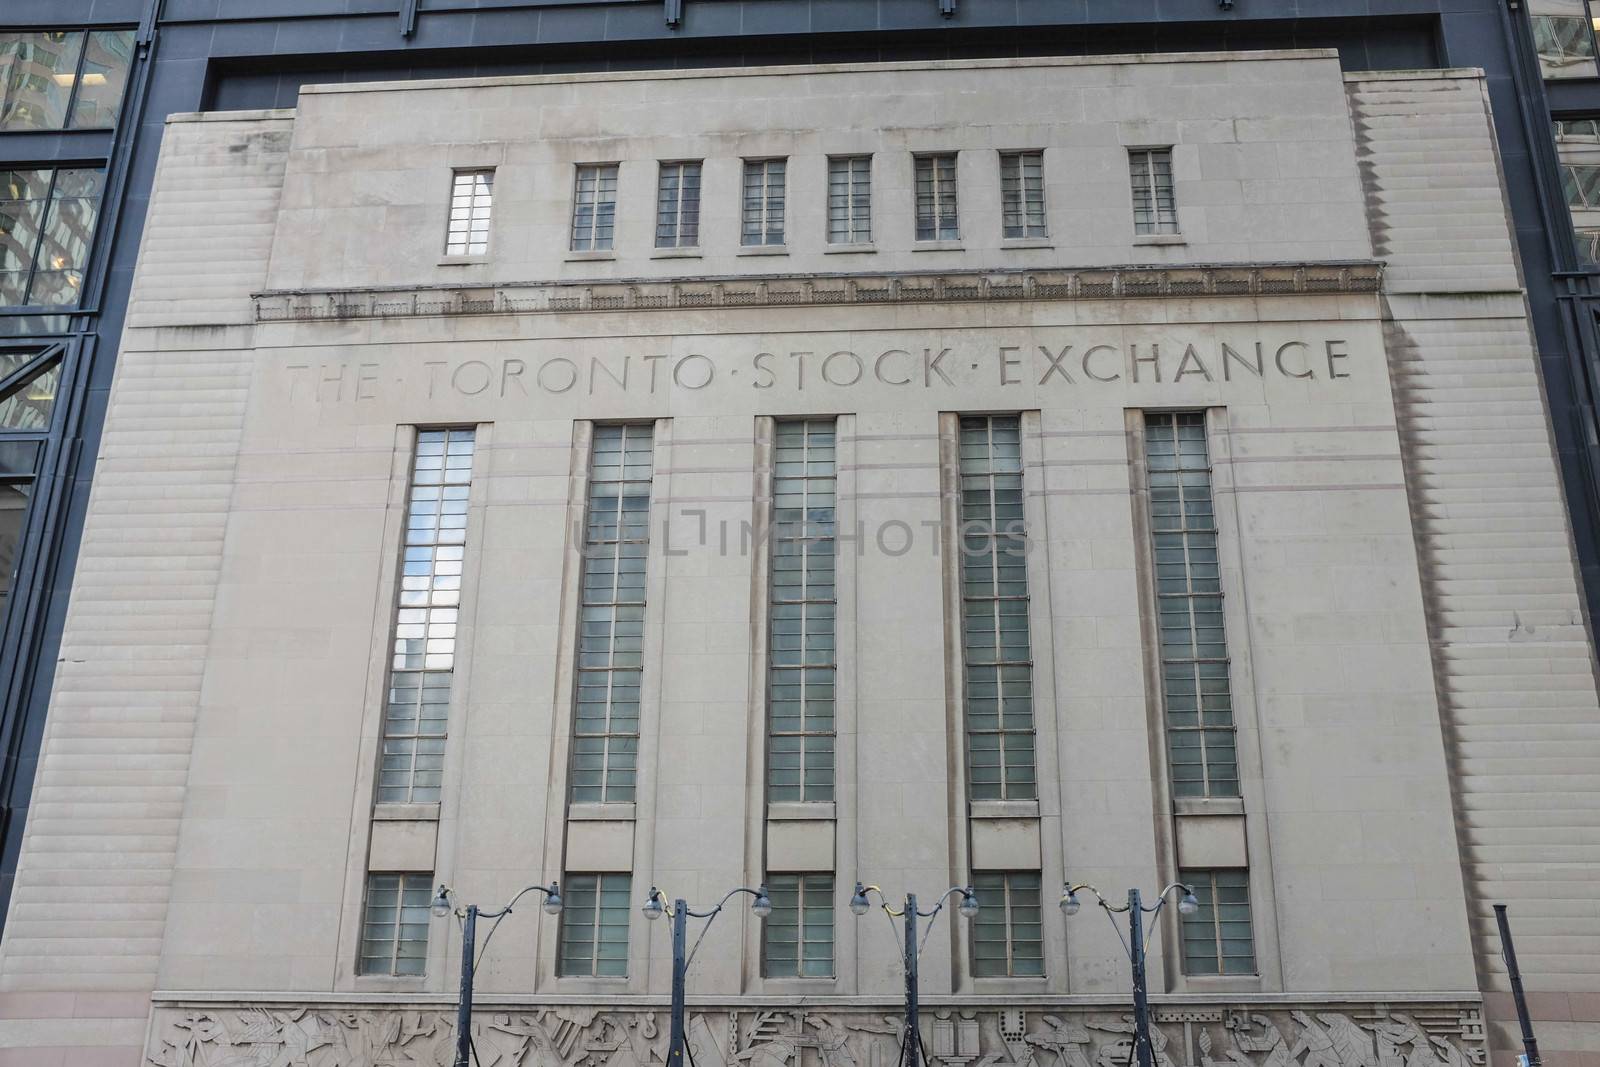 Toronto Stock Exchange Building by IVYPHOTOS